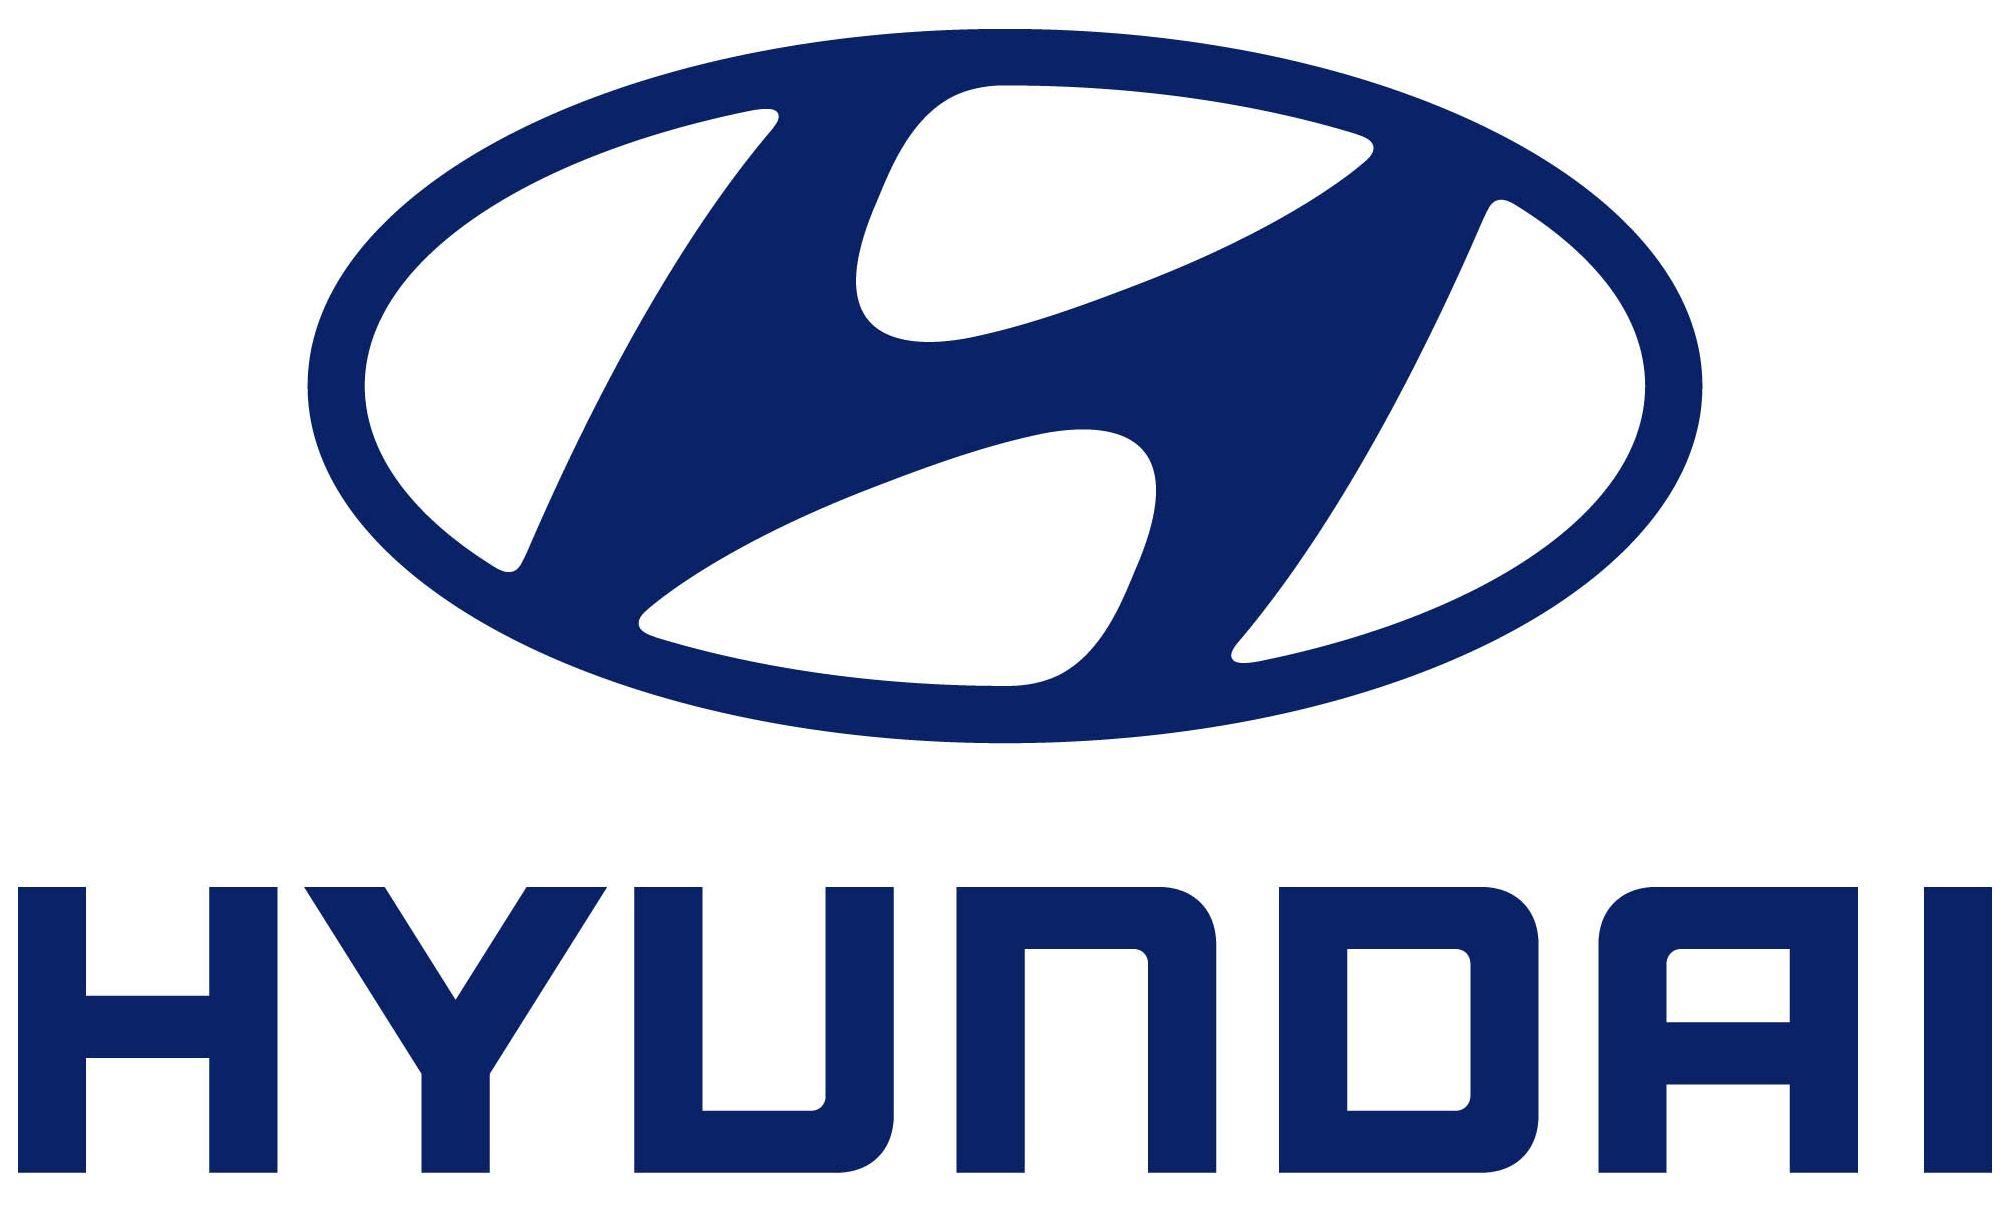 Old Hyundai Logo - Hyundai Logo, Huyndai Car Symbol Meaning and History. Car Brand